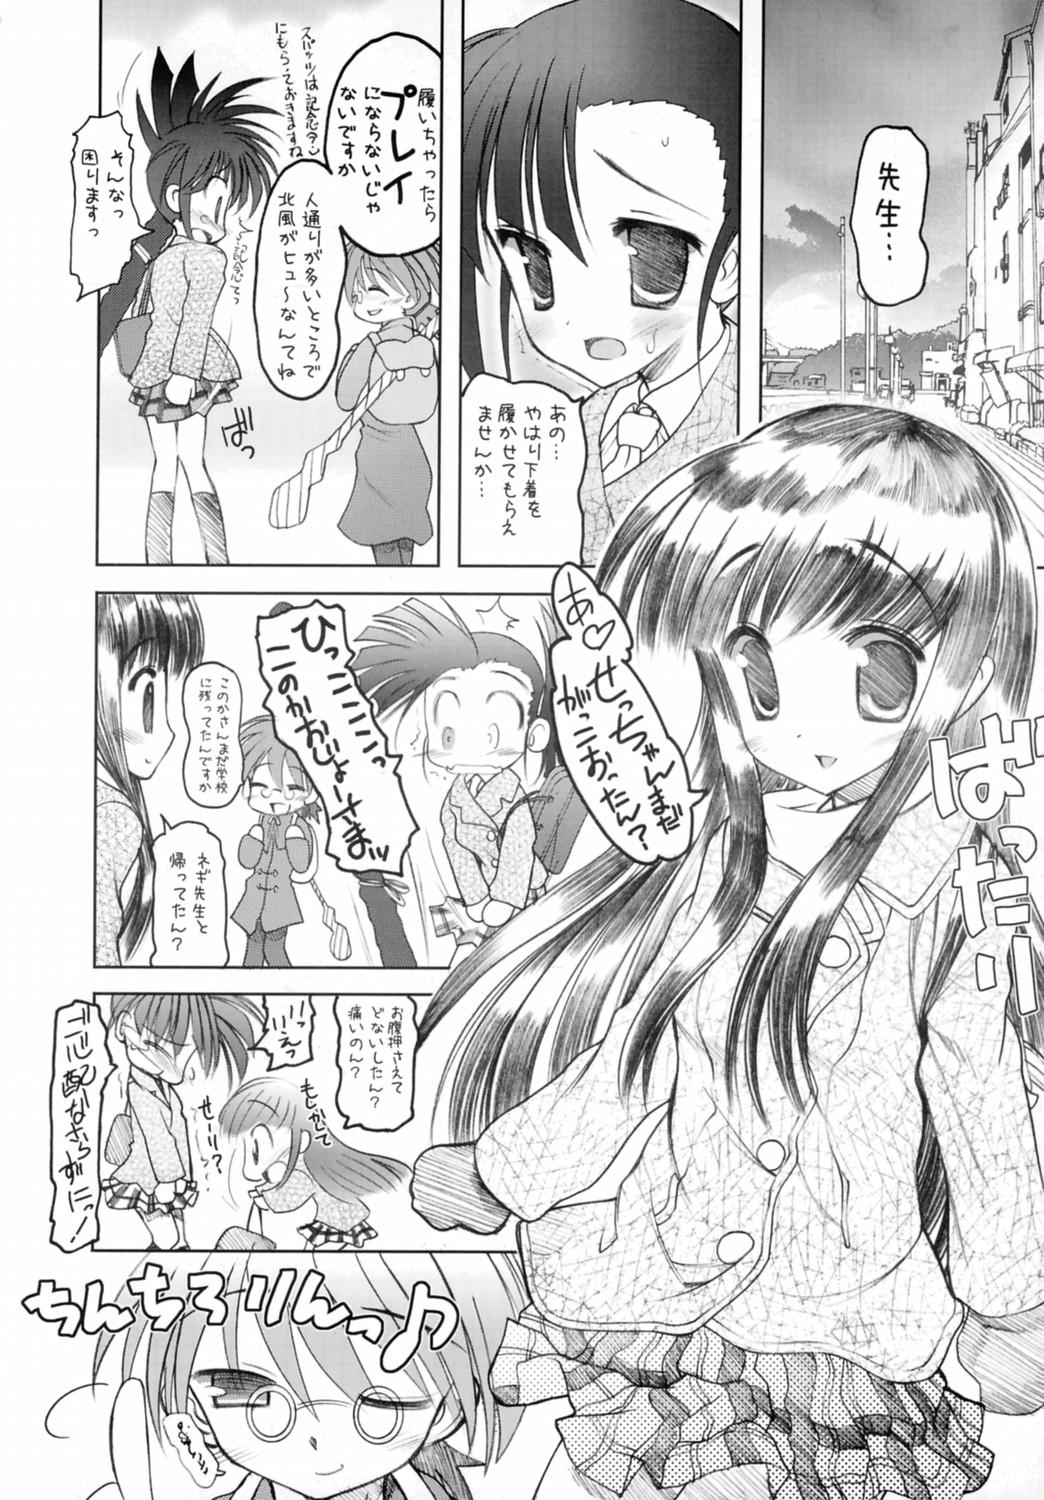 Redhead Negidaku! Kaikin - Mahou sensei negima Room - Page 13